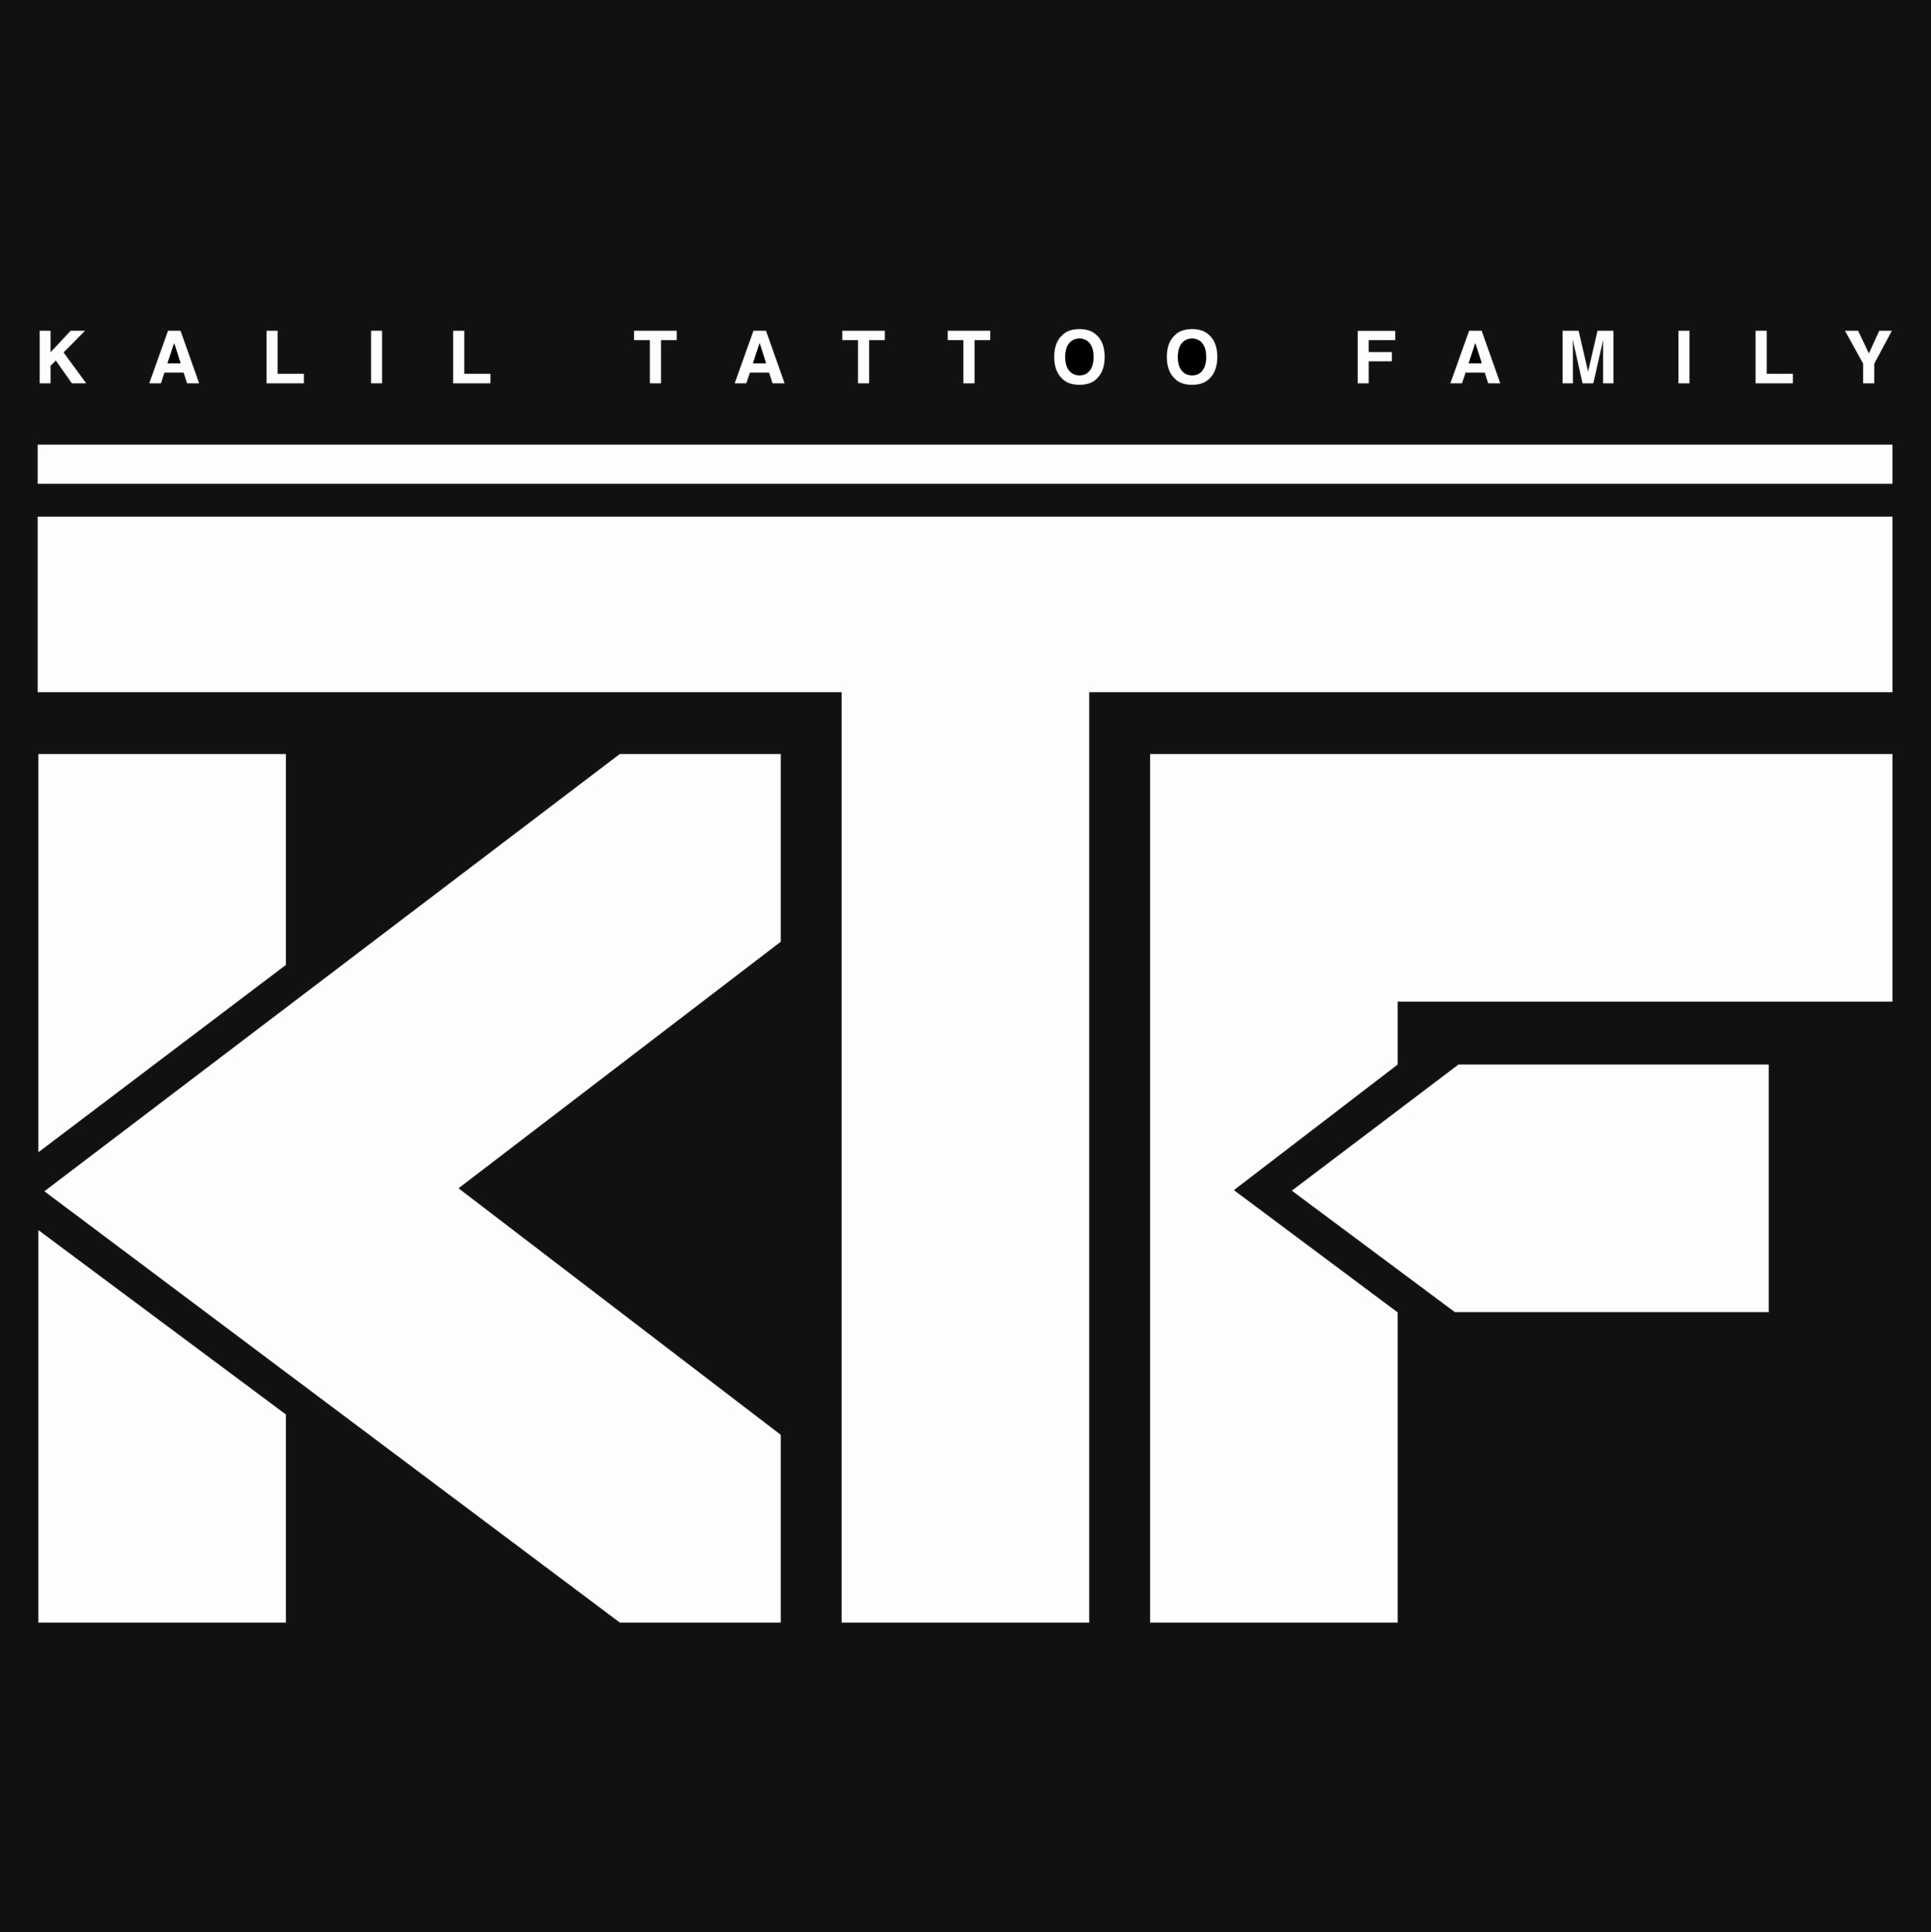 Kalil Tattoo Family